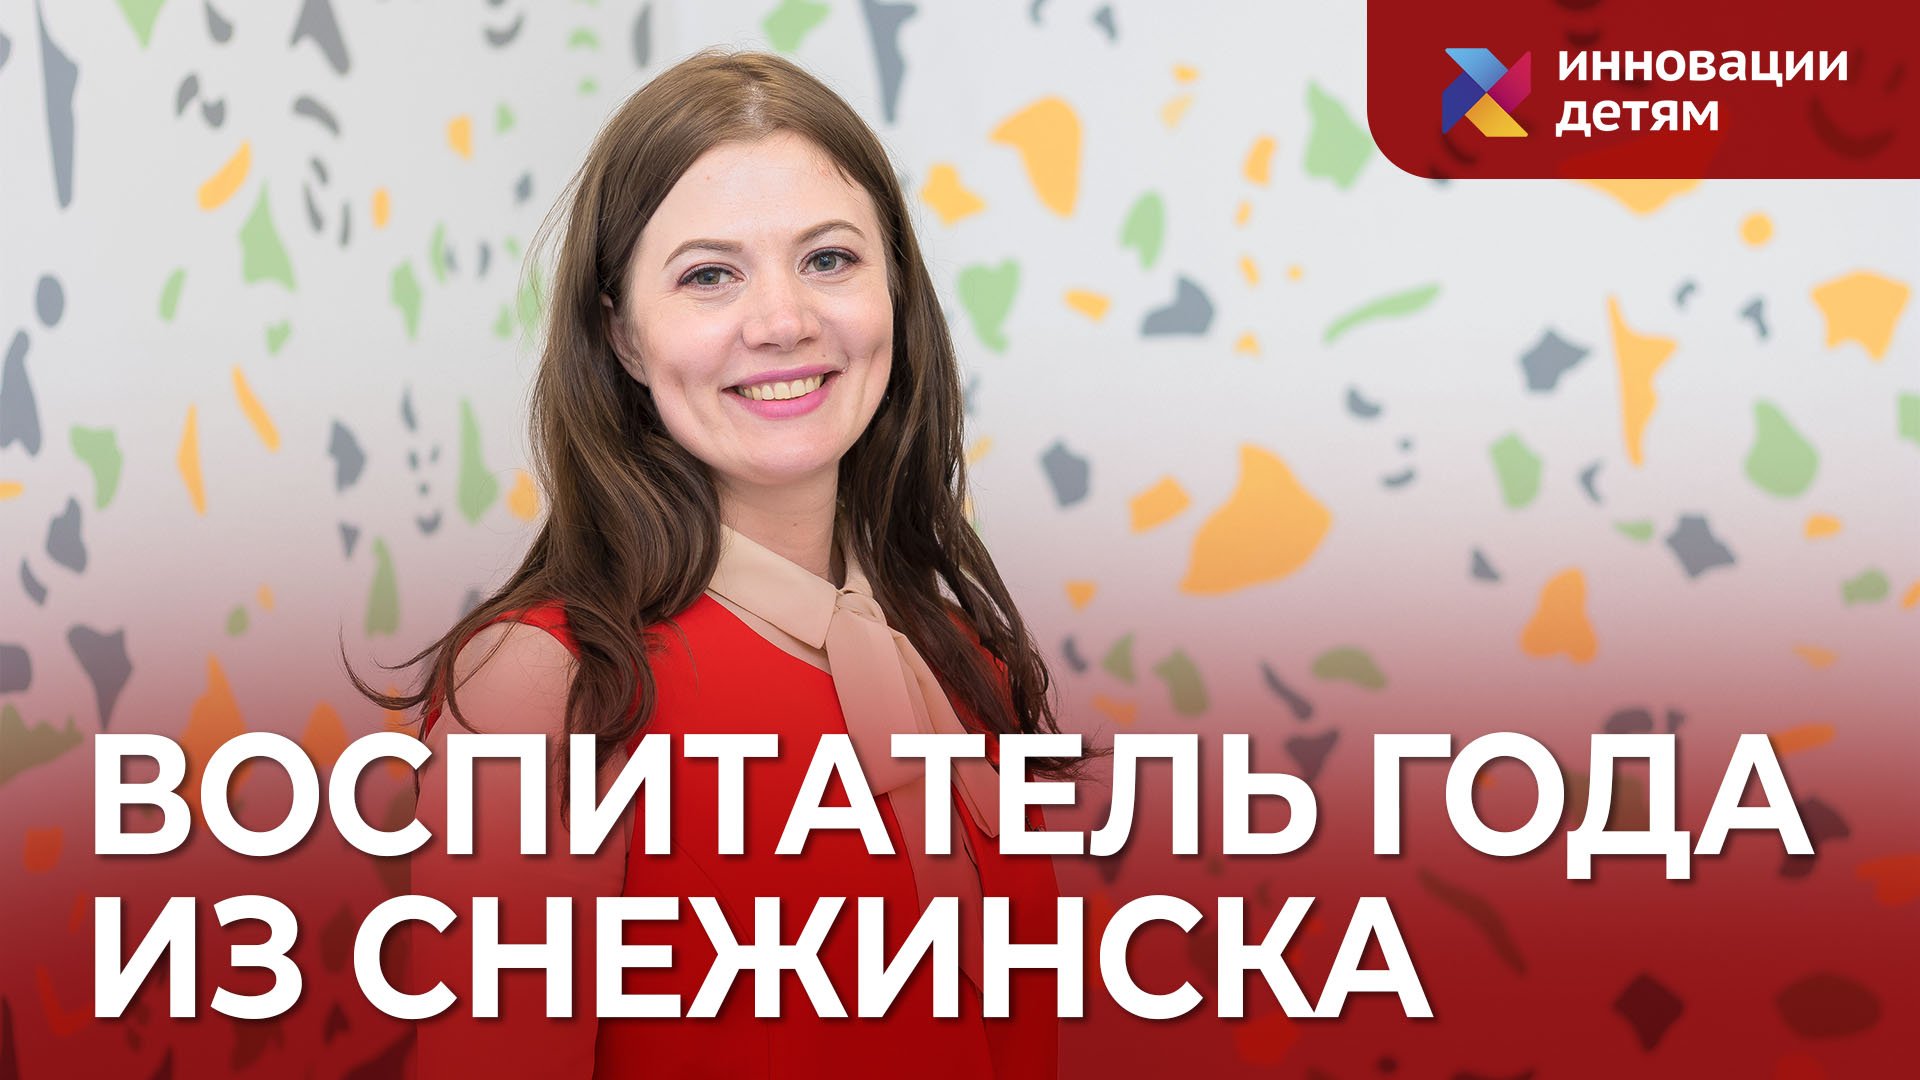 Воспитатель года Челябинской области Екатерина Щербинина в гостях у «Инновации детям»